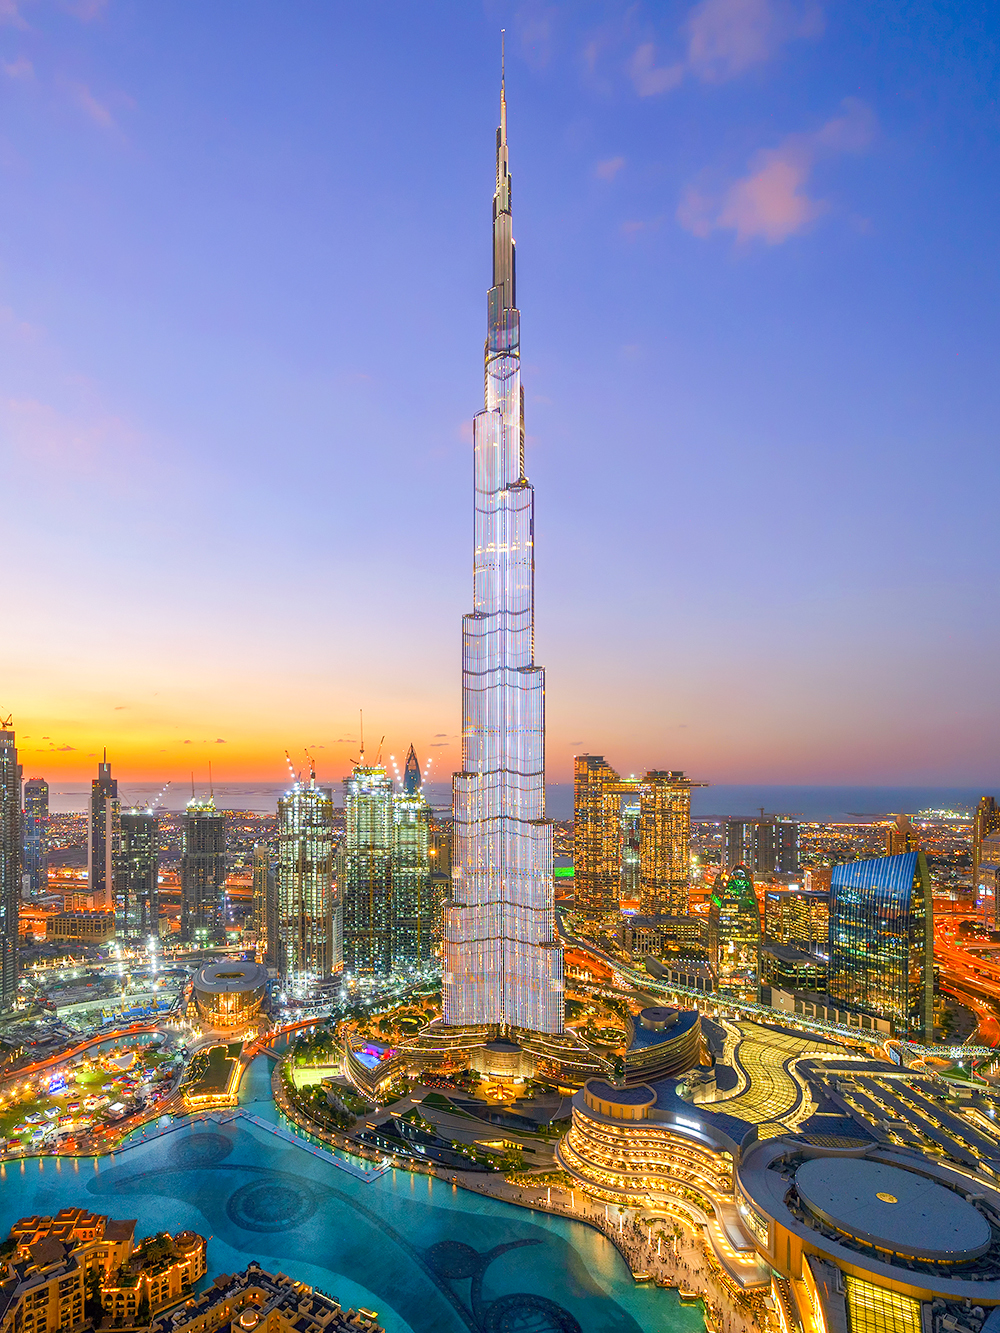 Nằm ở Dubai, Các Tiểu vương quốc Ả Rập Thống nhất, Burj Khalifa là một địa danh mang tính biểu tượng của Dubai và là tòa nhà cao nhất thế giới . Nó là một biểu tượng của kiến ​​trúc và kỹ thuật hiện đại, thể hiện những gì con người có khả năng tạo ra. Tòa nhà đứng ở độ cao 828 mét và có 163 tầng. Việc xây dựng Burj Khalifa bắt đầu vào năm 2004 và phải mất sáu năm để hoàn thành tòa tháp. Nó được chính thức khai trương vào ngày 4 tháng 1 năm 2010 và kể từ đó đã trở thành một địa điểm du lịch nổi tiếng, mang đến tầm nhìn tuyệt đẹp ra Dubai từ đài quan sát của nó.  Bên cạnh việc là cấu trúc độc lập cao nhất thế giới, tòa tháp còn nắm giữ nhiều kỷ lục thế giới, bao gồm số tầng cao nhất, tầng có người ở cao nhất, đài quan sát ngoài trời cao nhất và thang máy có khoảng cách di chuyển dài nhất.